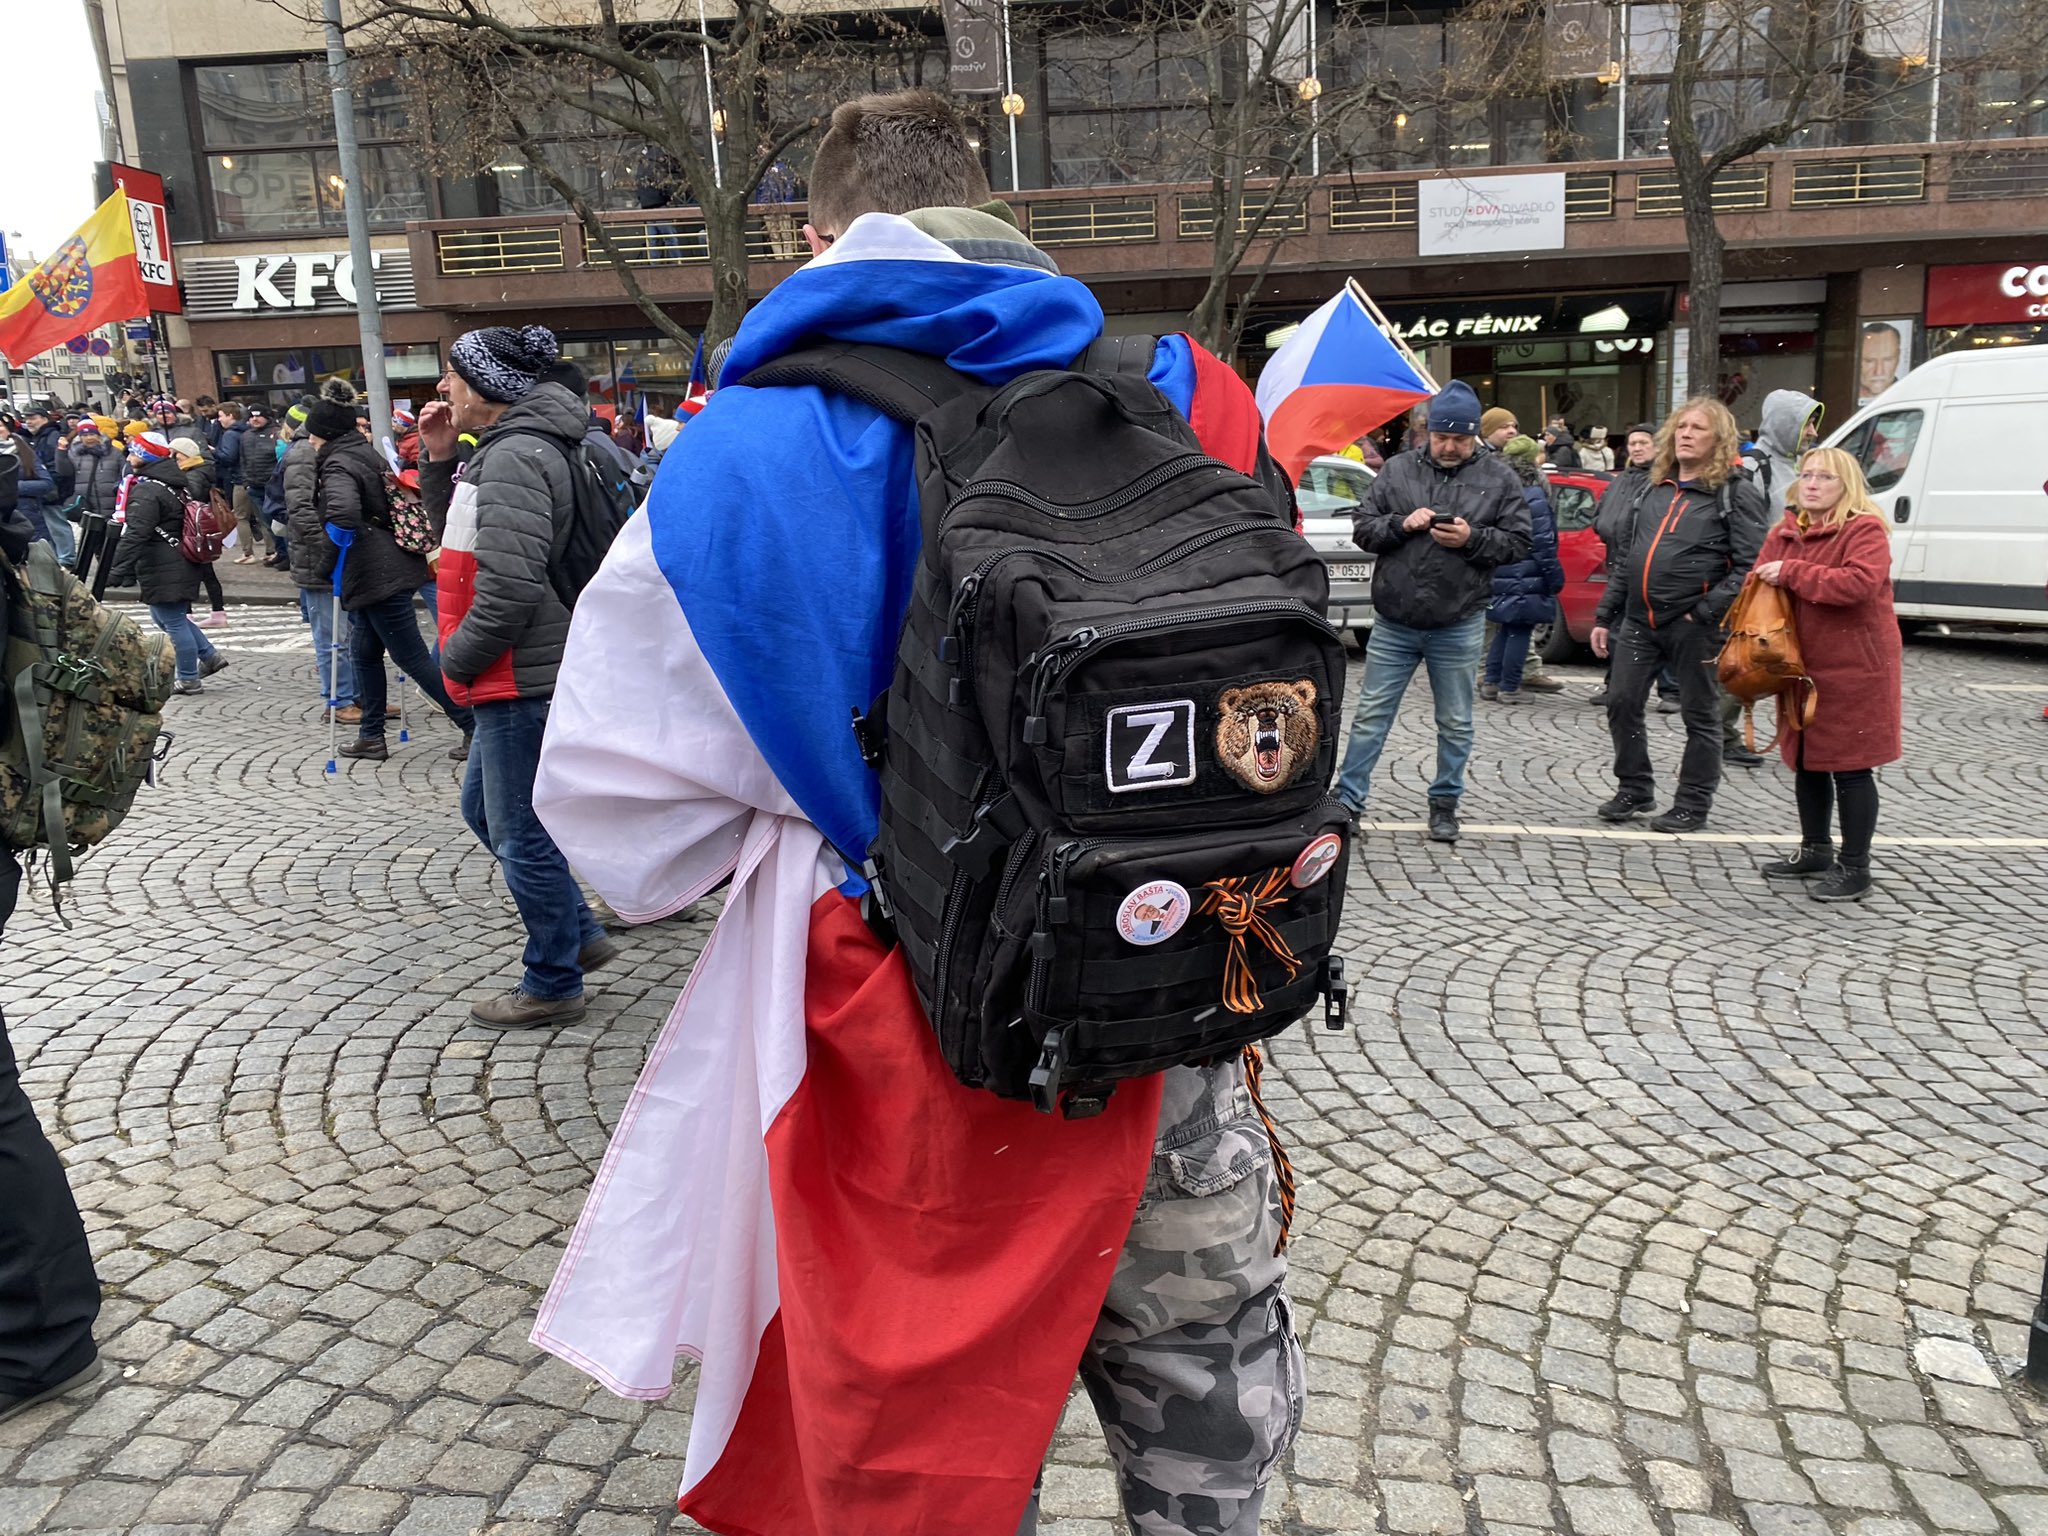 Мужчину с буквой Z на рюкзаке и шевроном ЧВК "Вагнер" задержали на акции в Праге